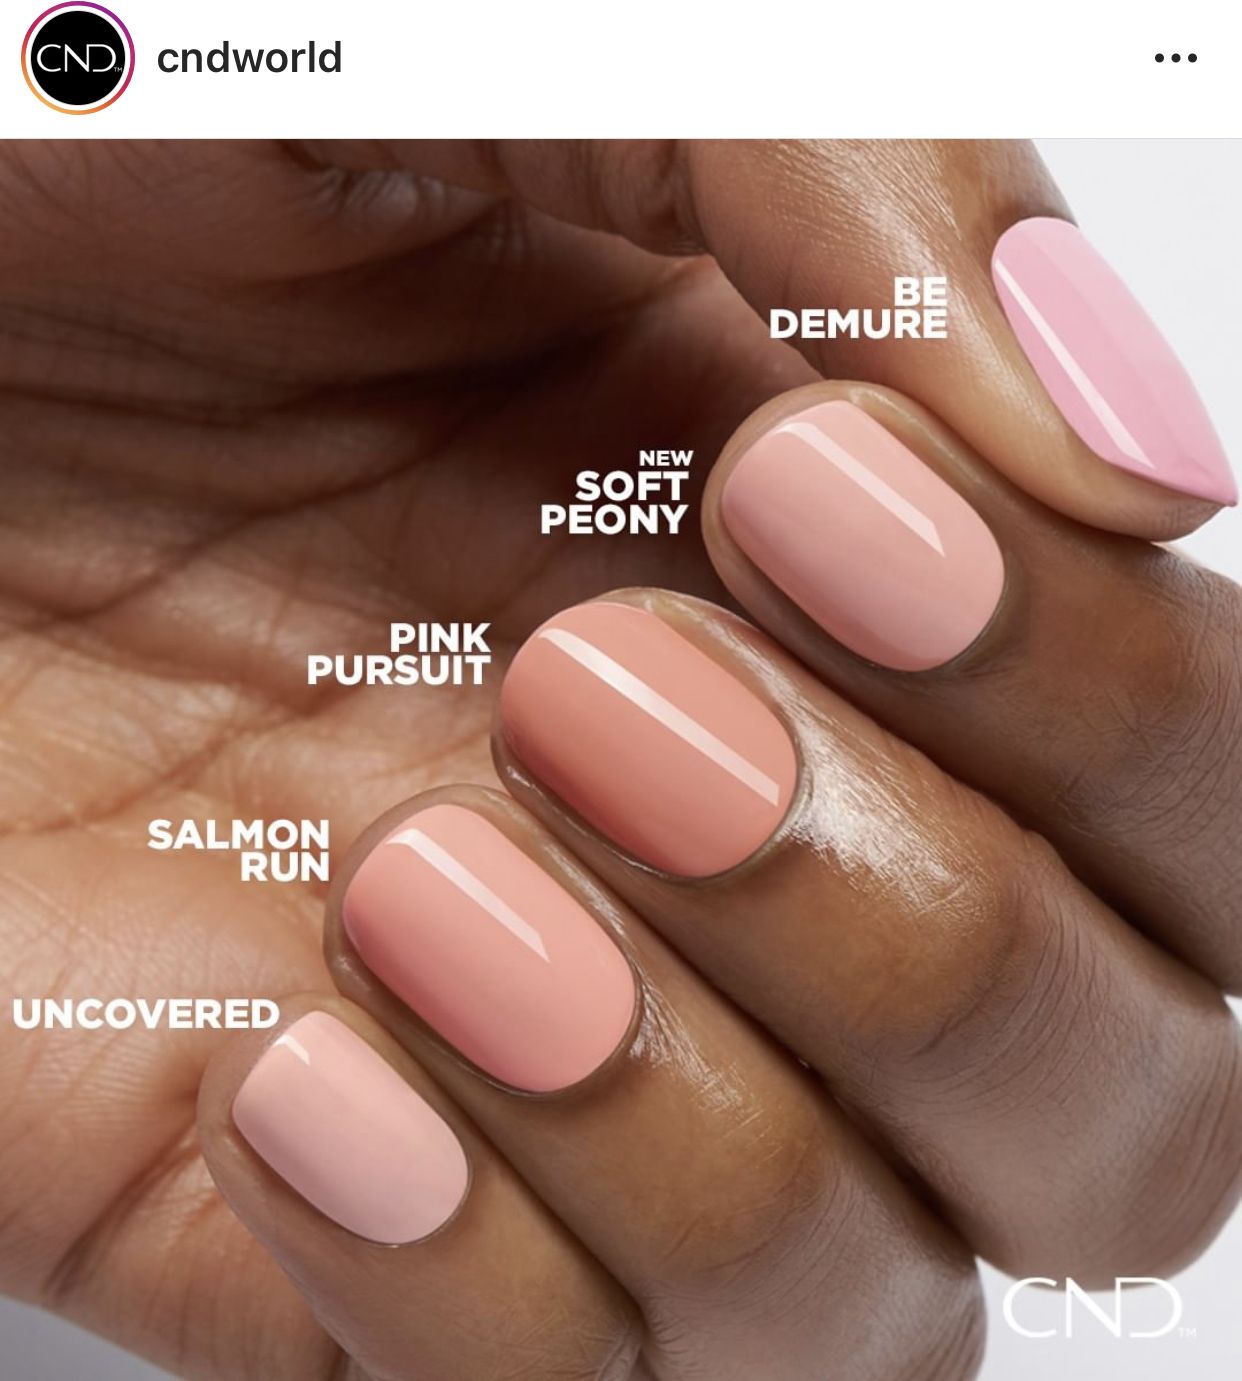 Pin By Alexandra Polanova On Cnd In 2020 Shellac Nail Colors Soft Pink Nails Cnd Shellac Nails Summer